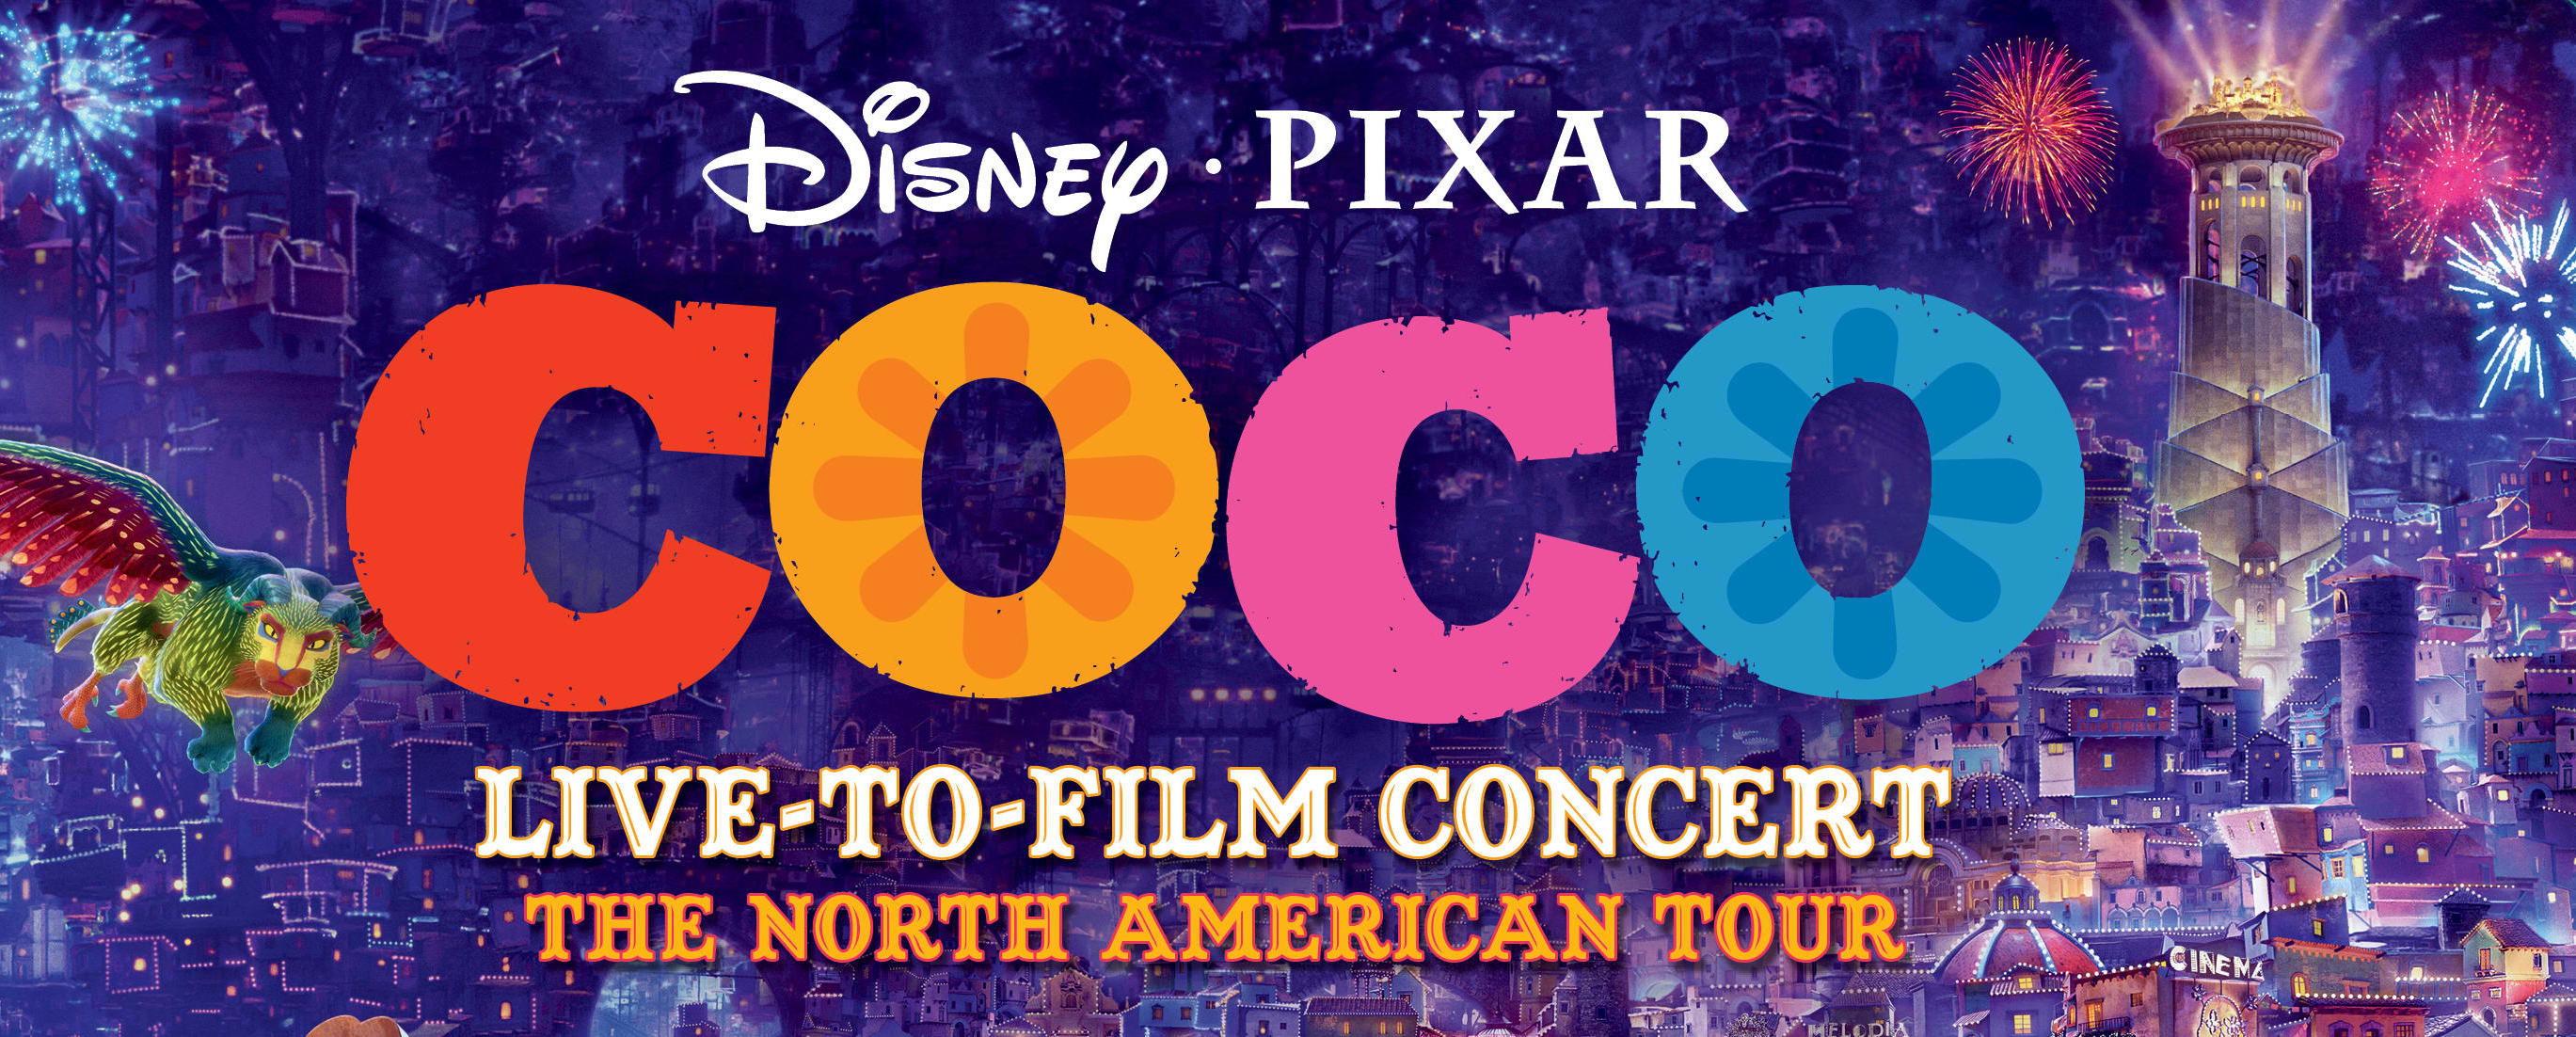 Disney/Pixar's COCO live-to-film concert